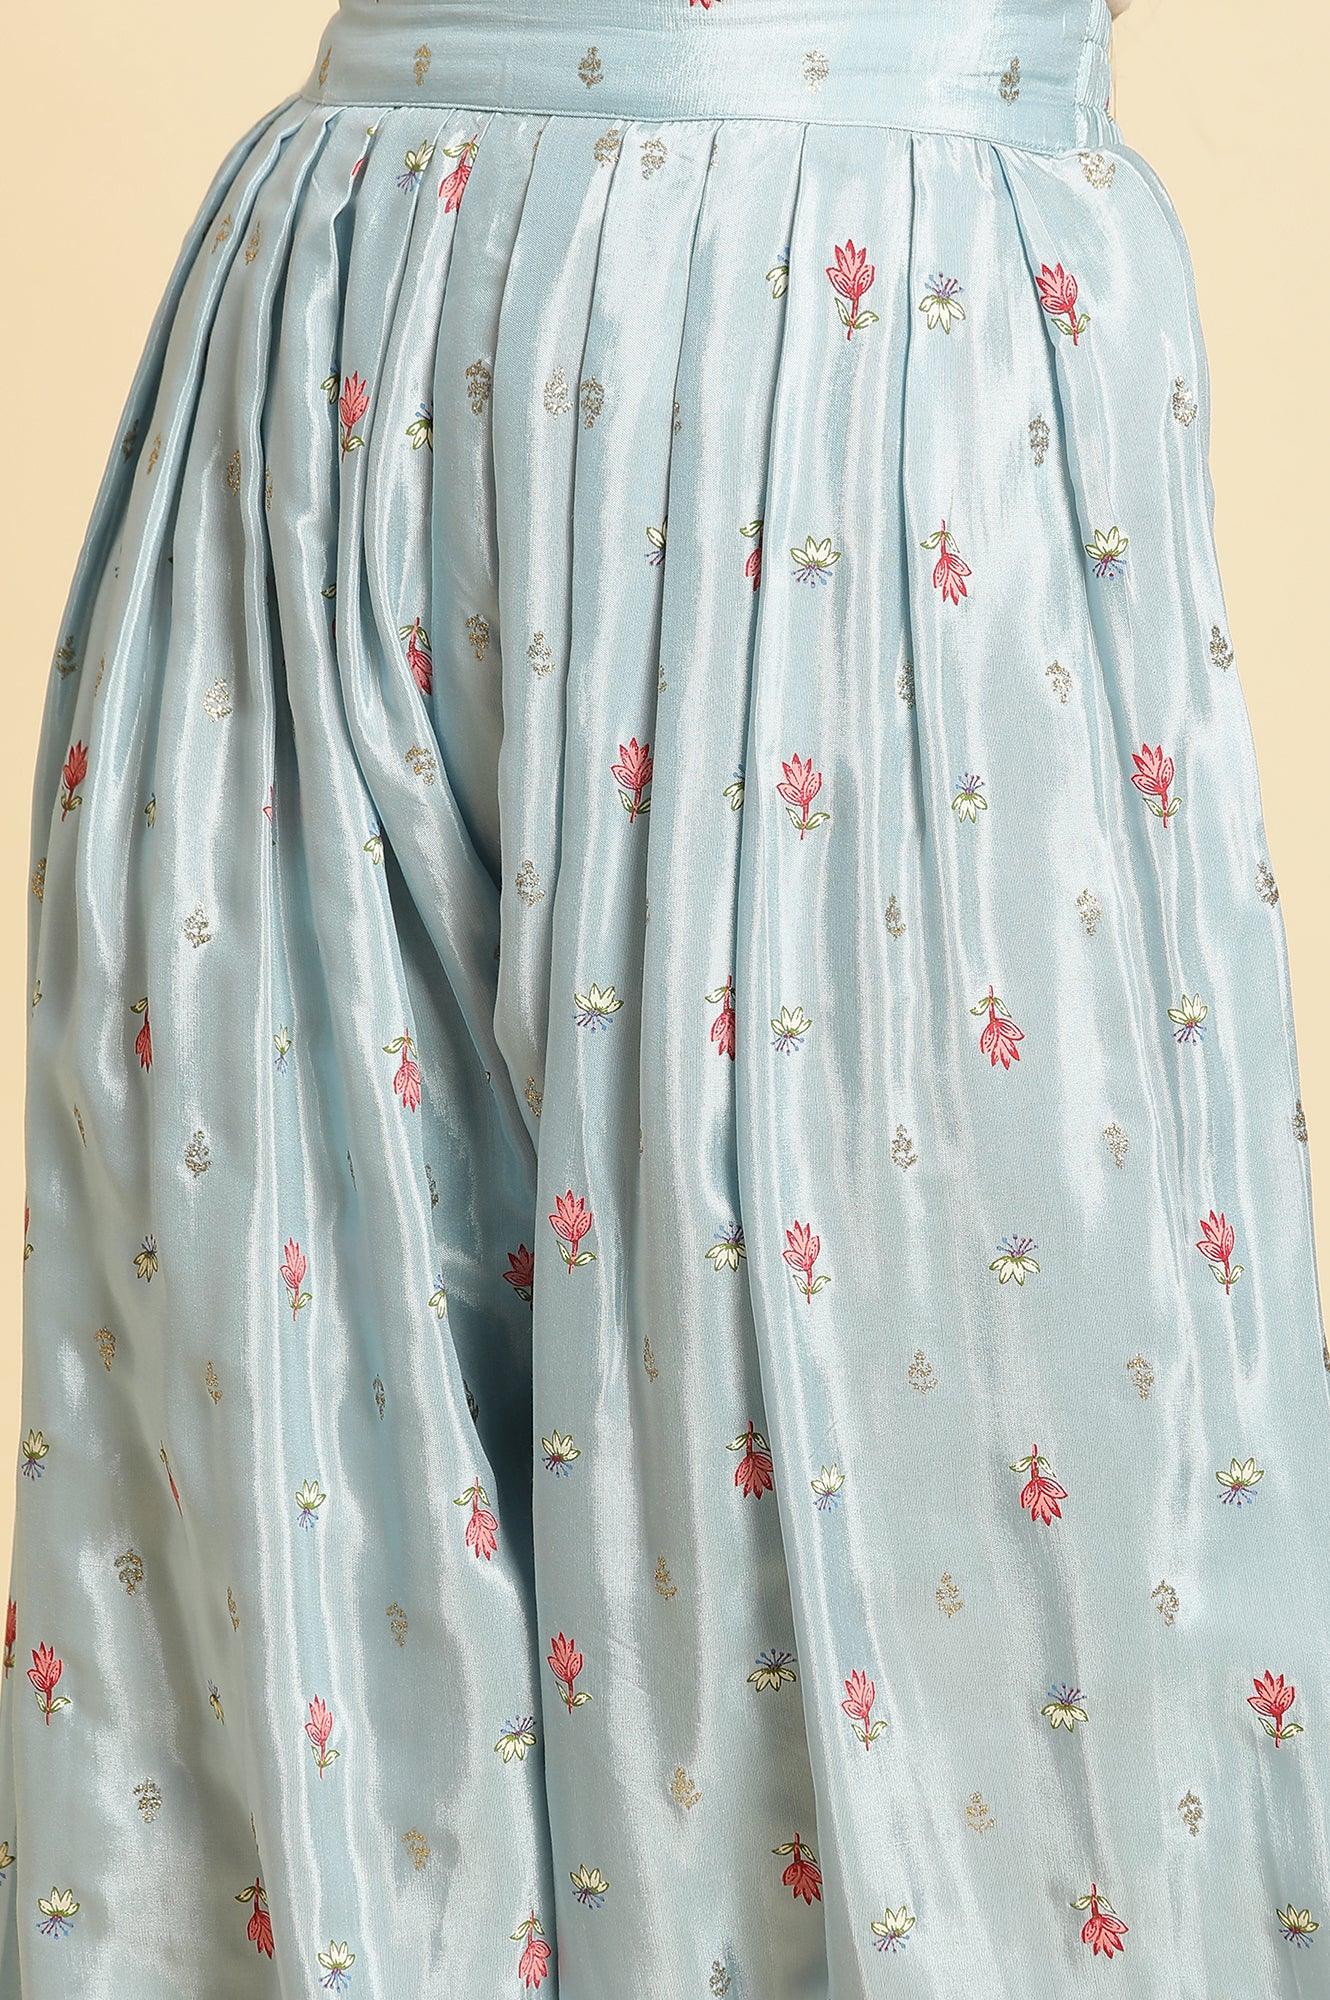 Sky Blue Floral Printed Salwar Pants - wforwoman